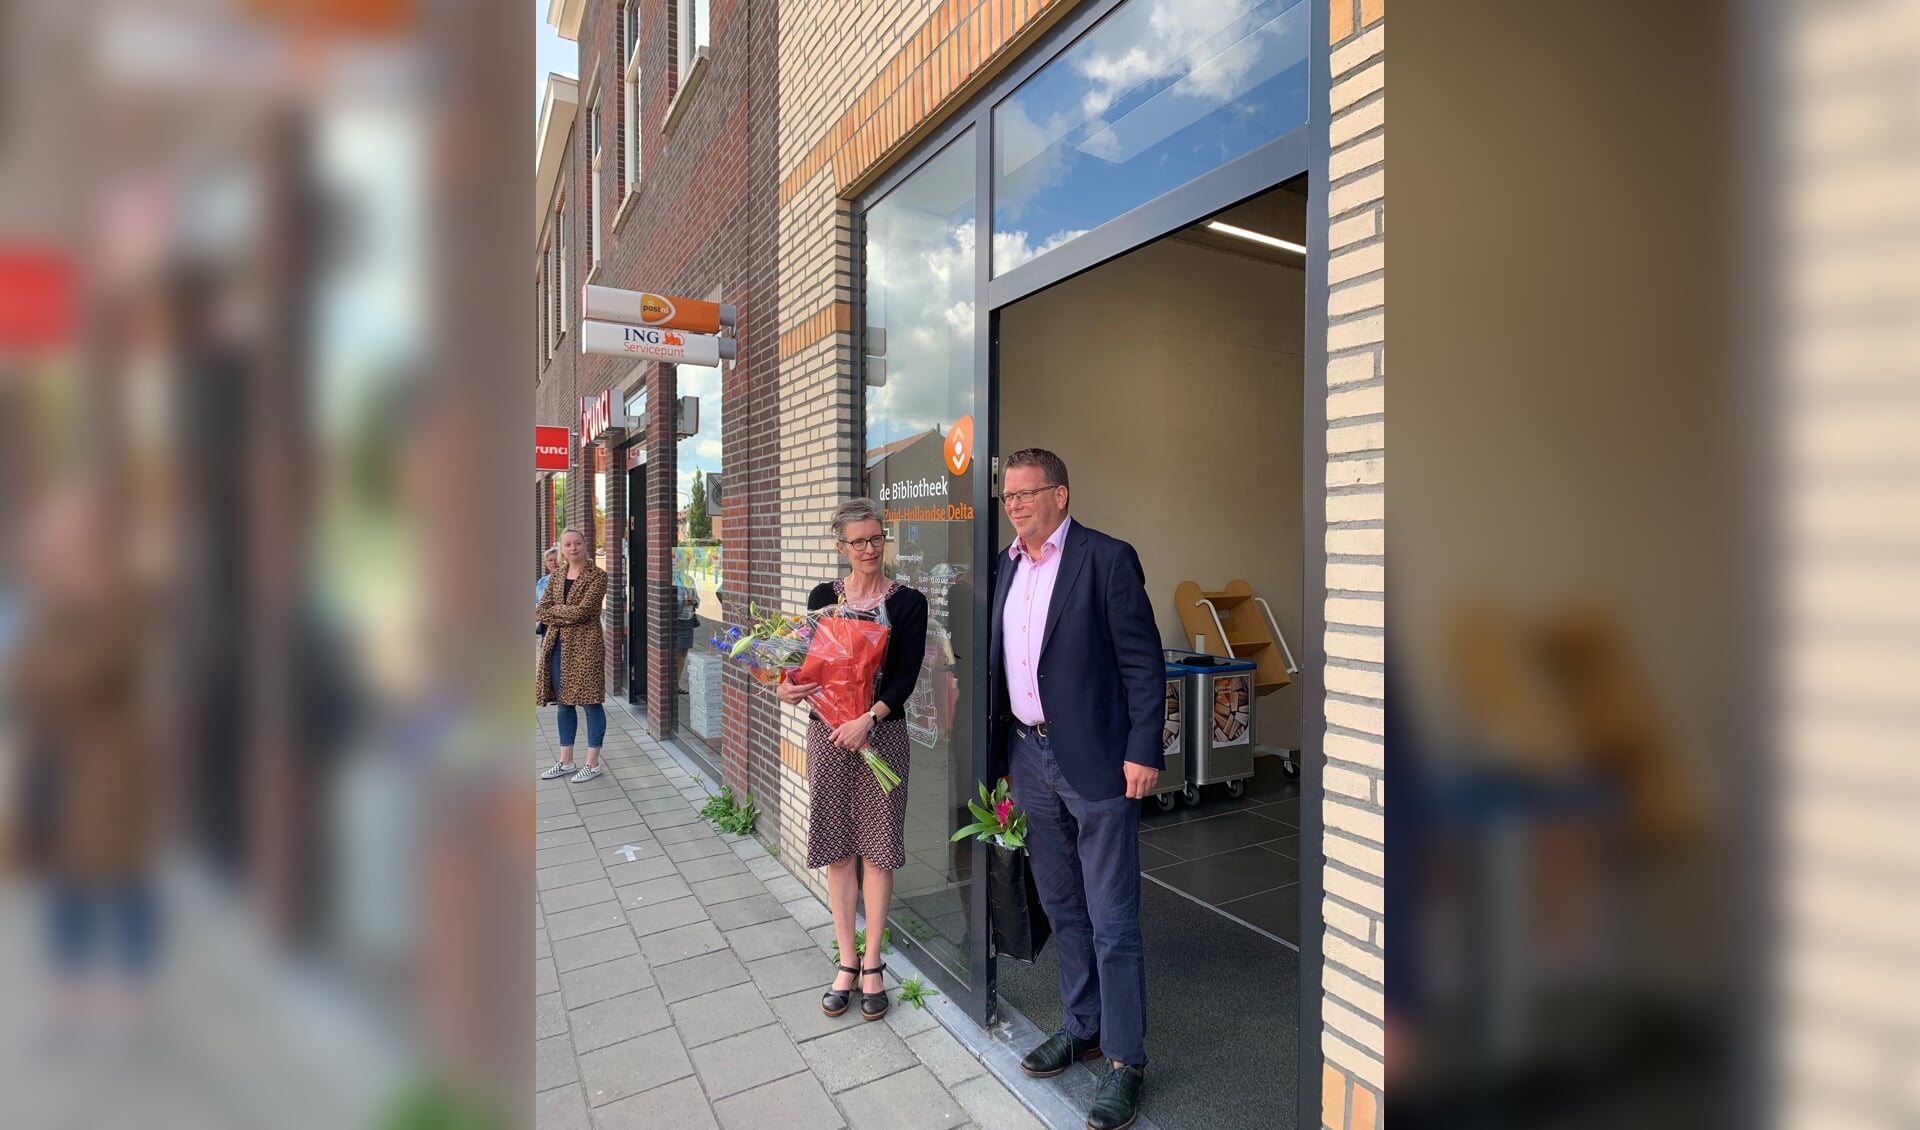 Op dinsdag 21 juli opende wethouder Berend Jan Bruggeman de pop-up bibliotheek in Oude-Tonge. 